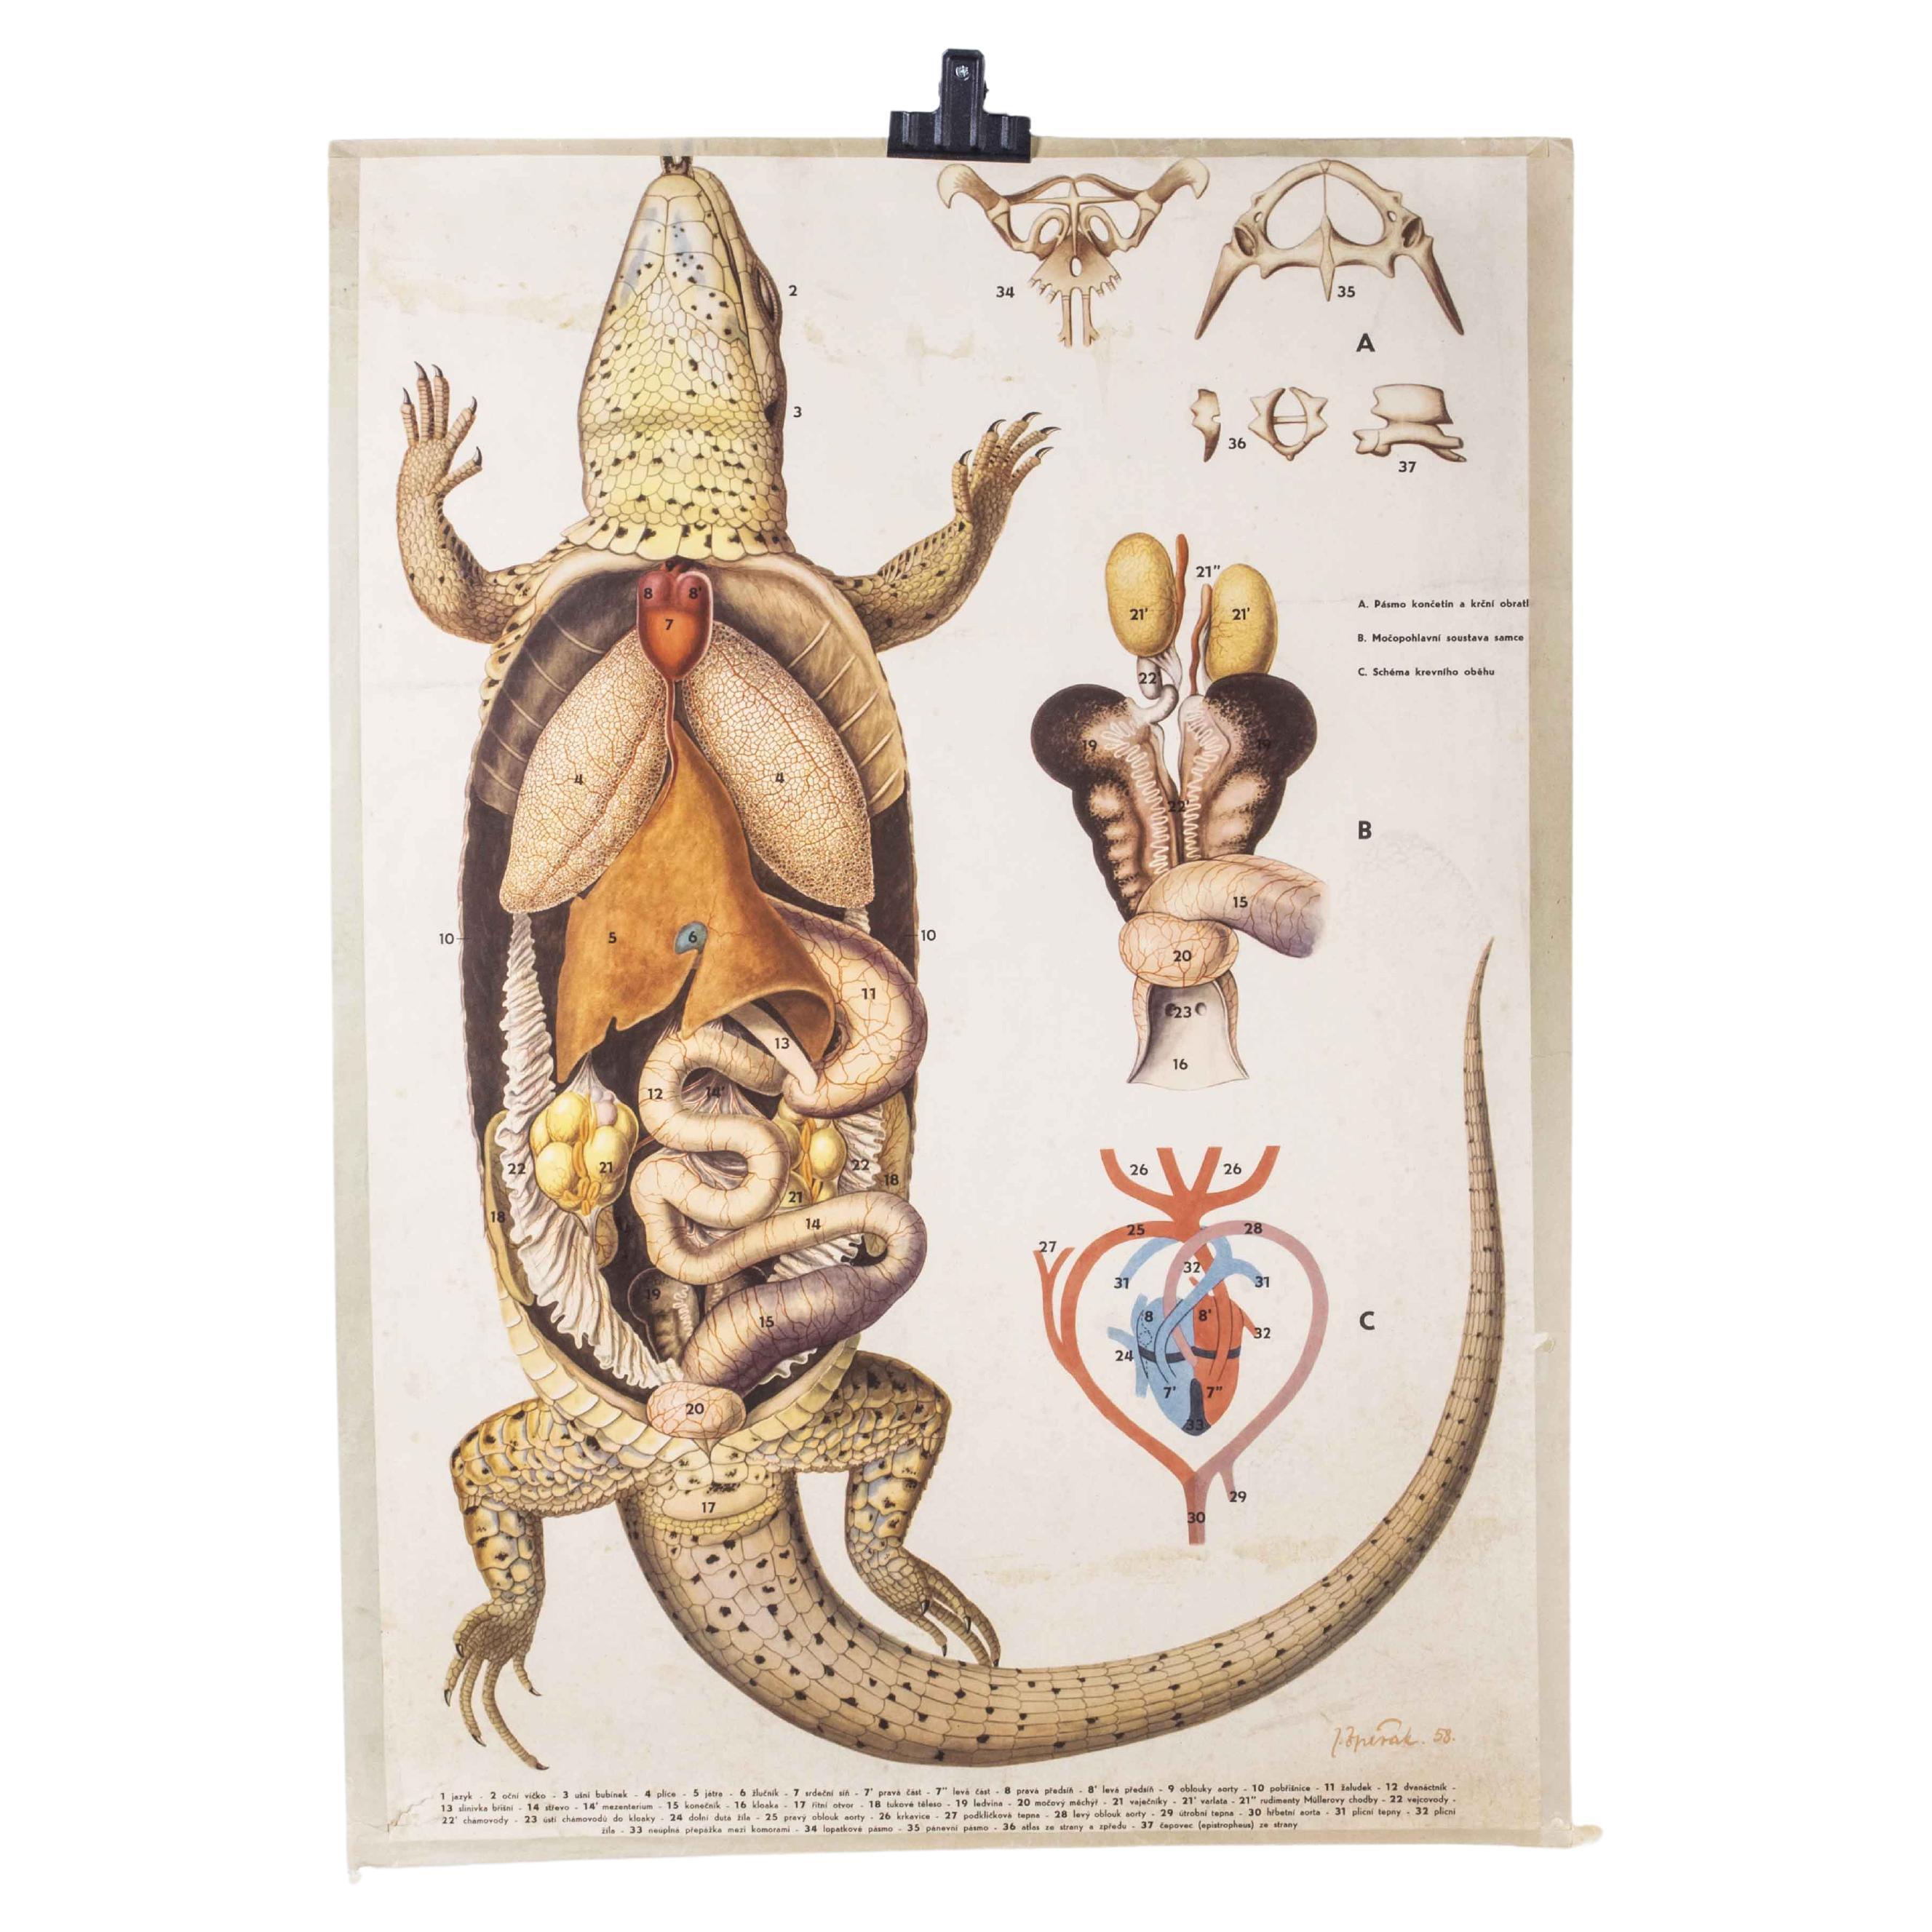 Poster éducatif sur l'anatomie des lézards des années 1950